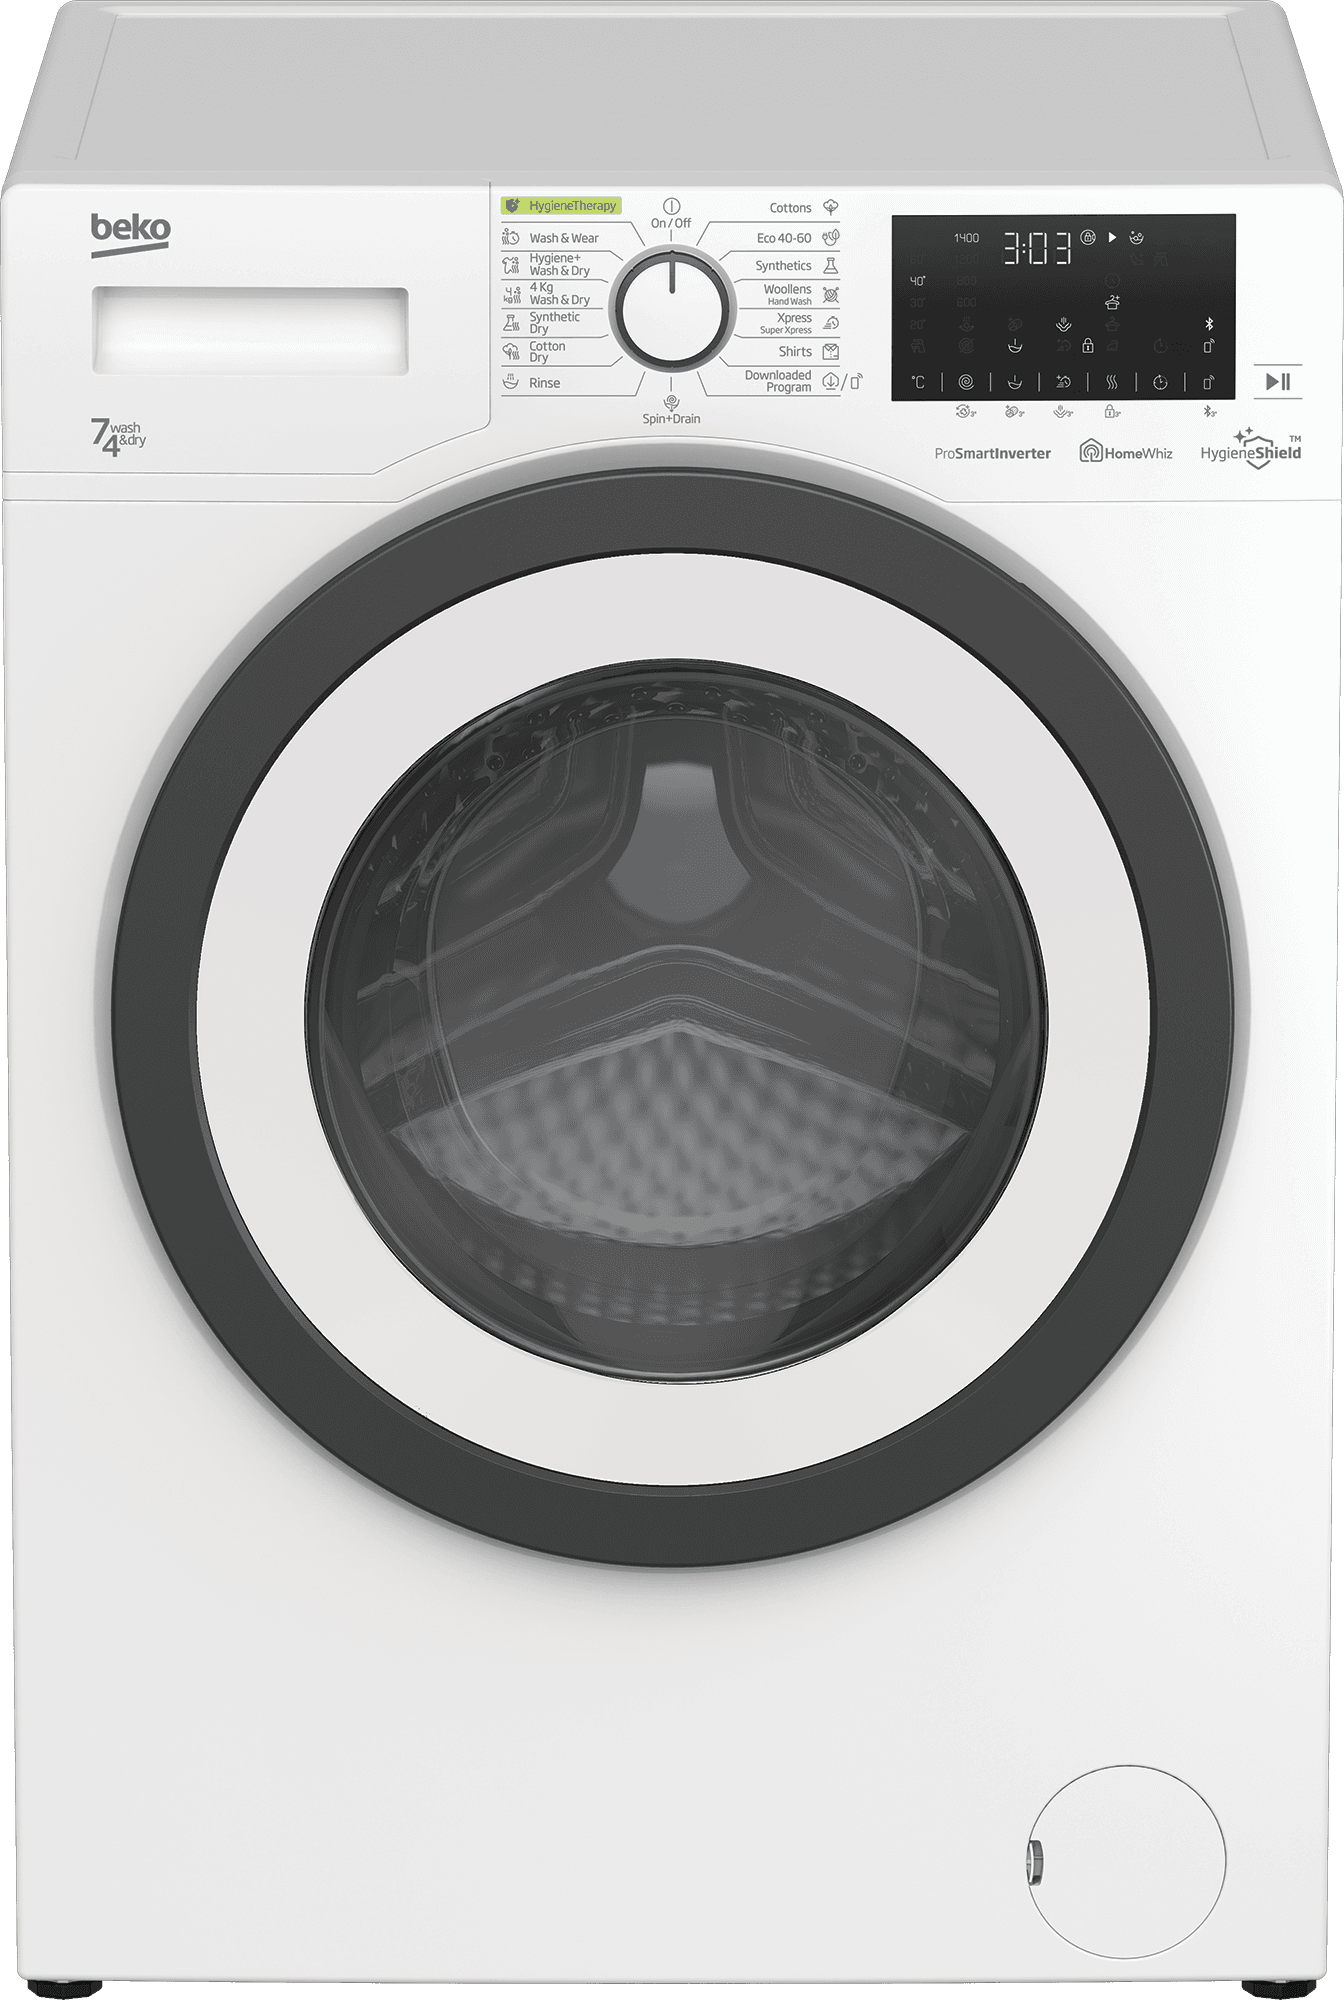 Selected image for BEKO Mašina za pranje i sušenje veša HTV 7736 XSHT ProSmart motor bela